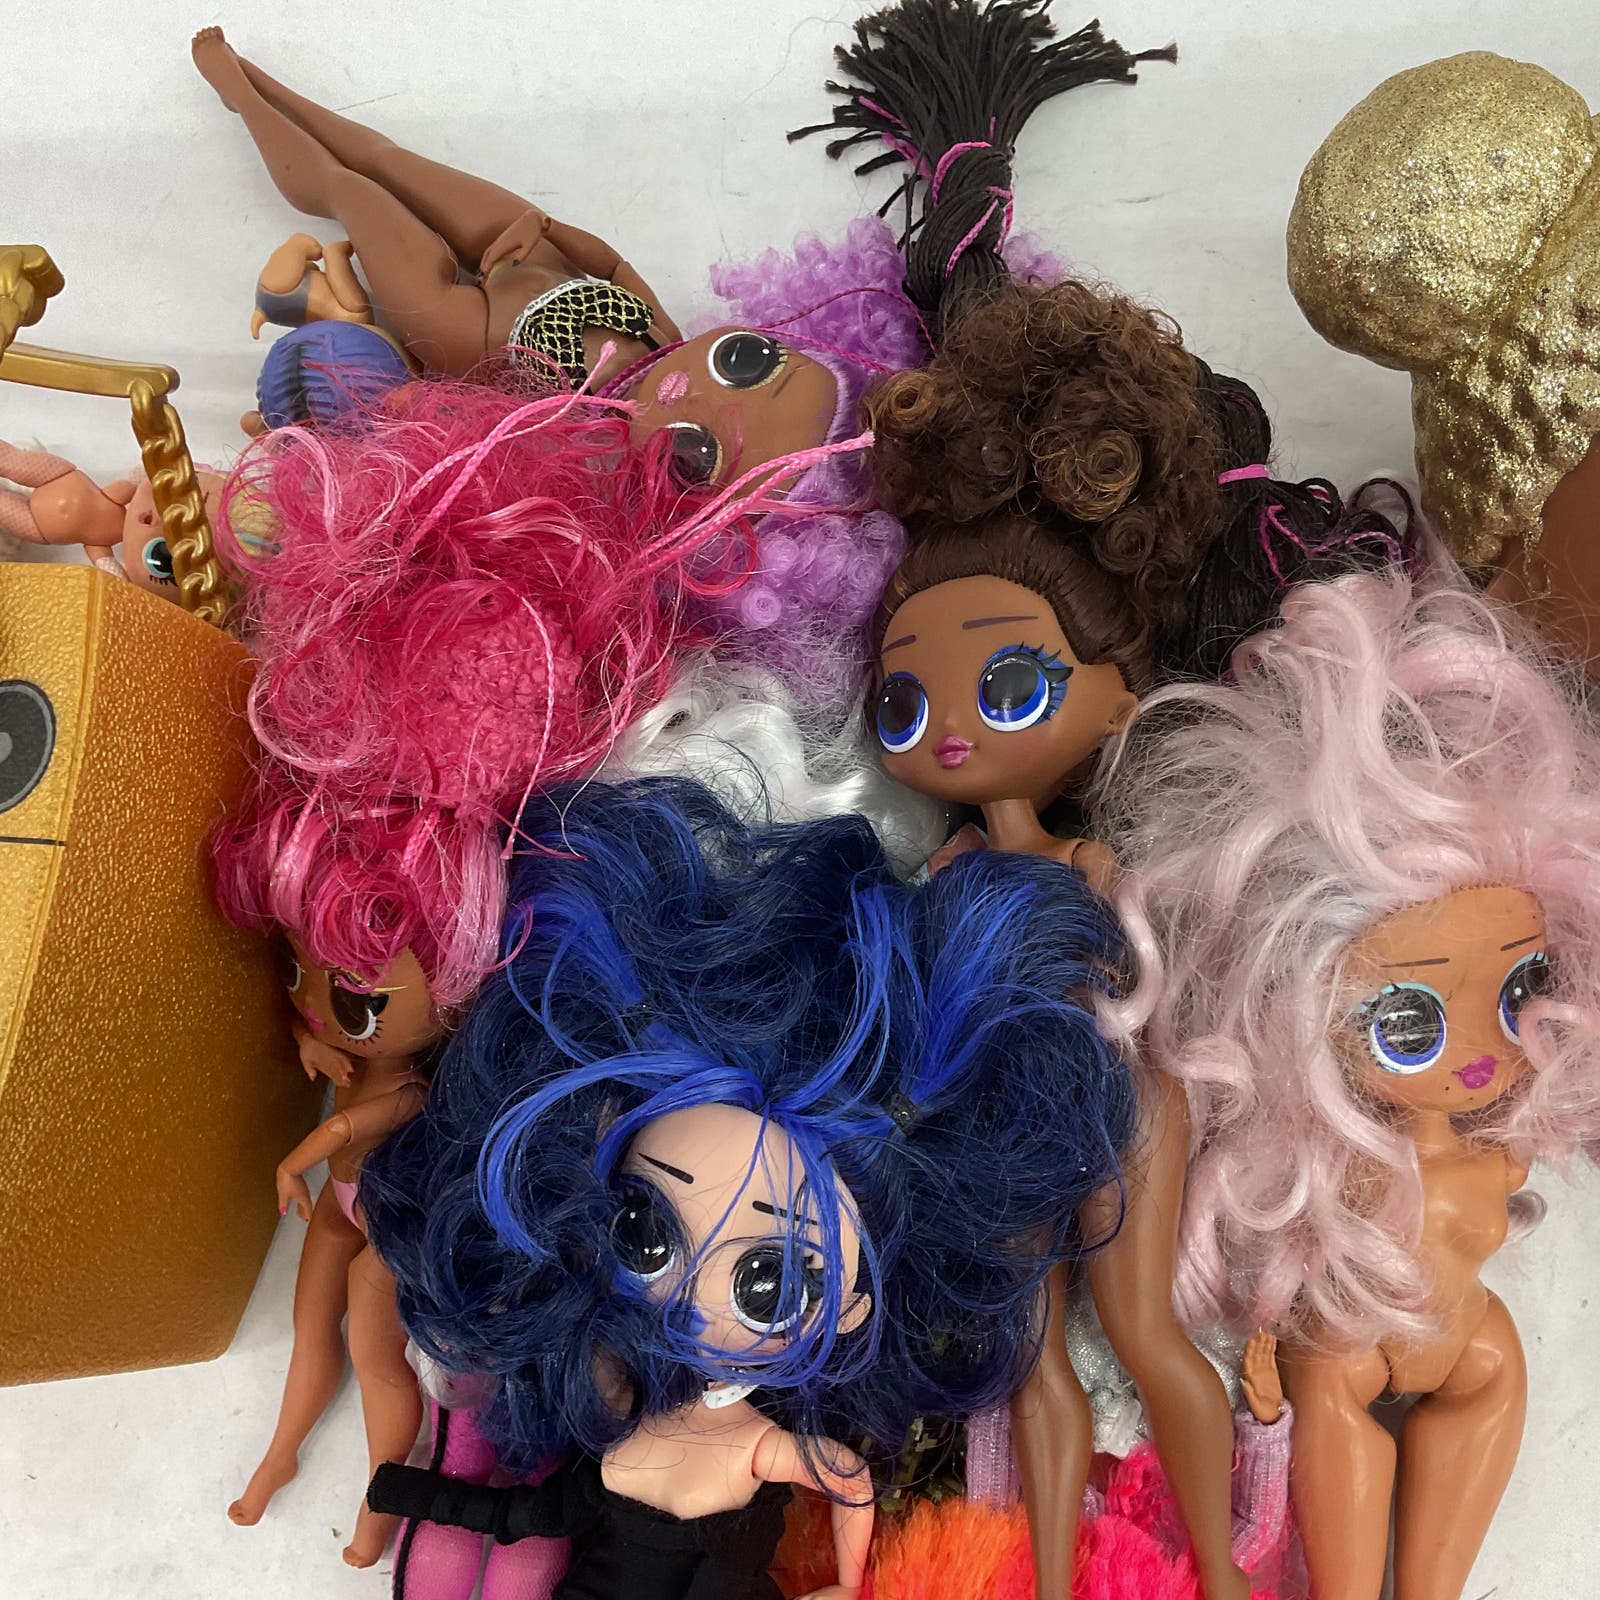 10 Pounds LOL Surprise Dolls Multicolor Fashion Doll Wholesale Bulk Lot - Warehouse Toys